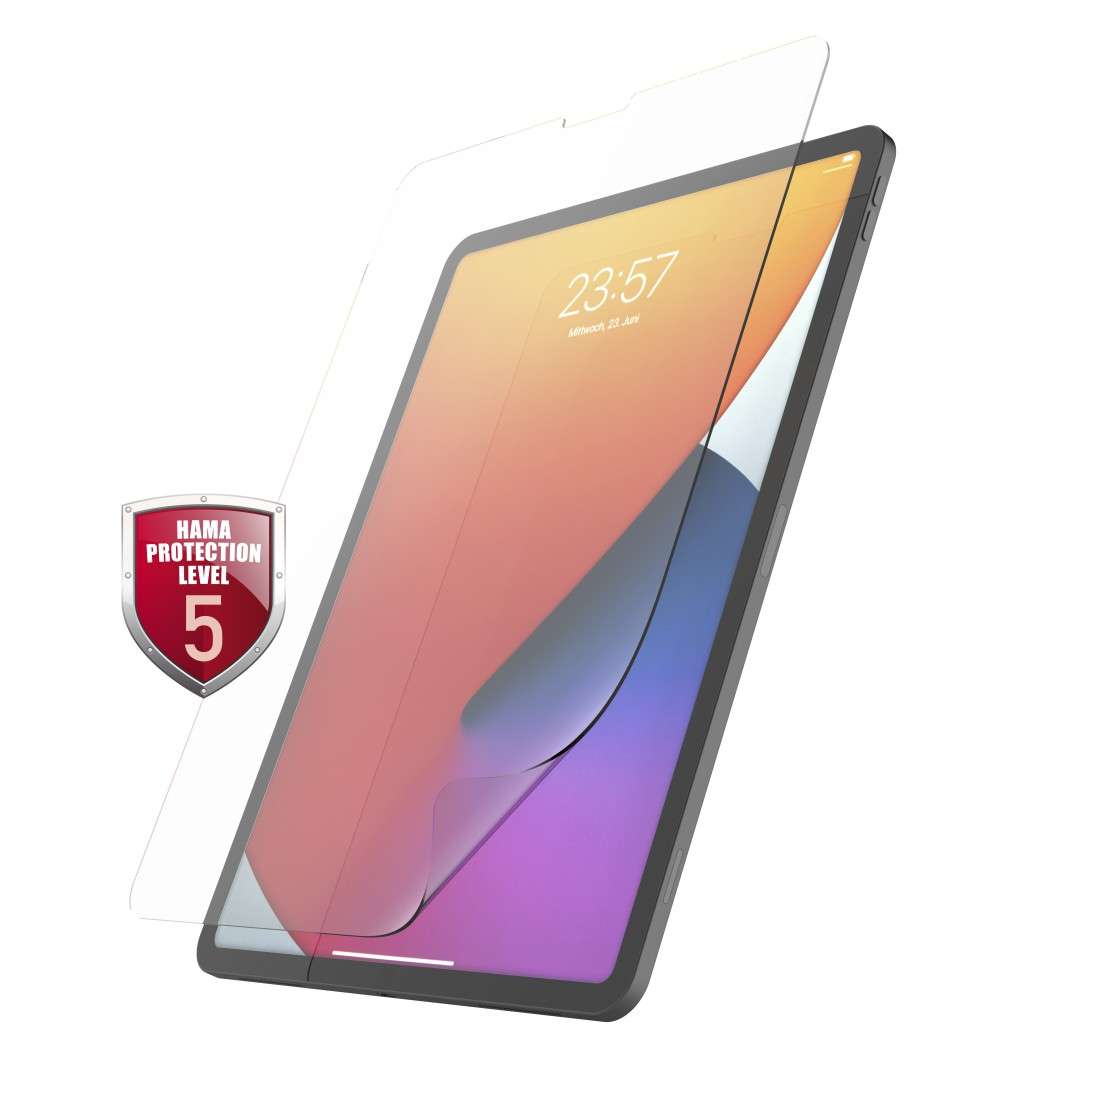 HAMA Displayschutzfolie Crystal Clear f. iPad Pro 12.9 (2018/2020/2021/2022)